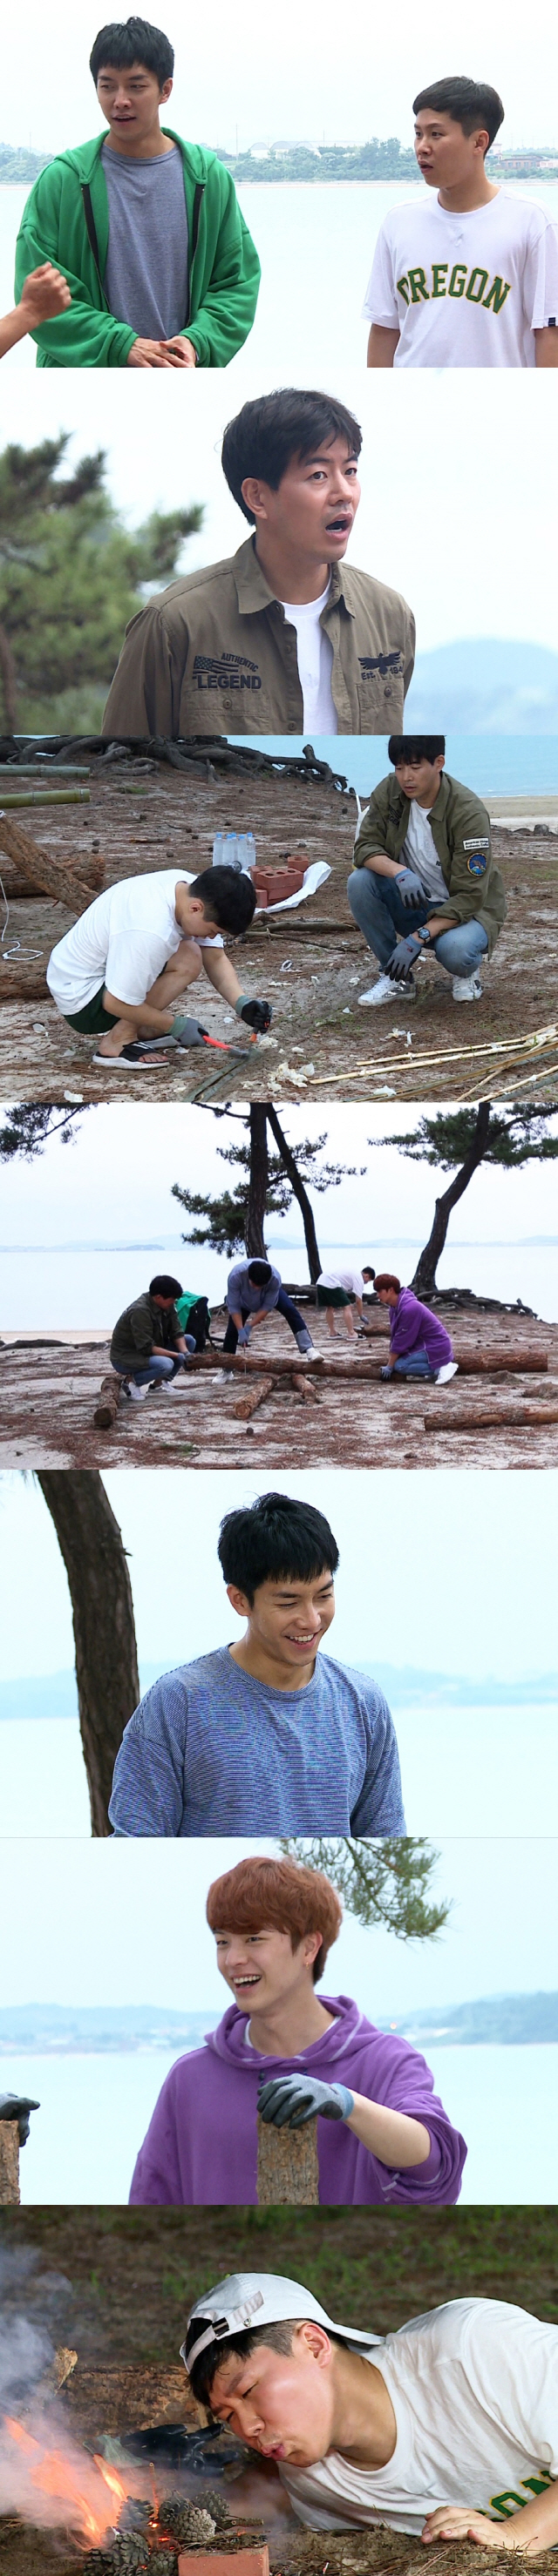 '집사부일체' 재난급 폭우에 한국에서 '정글의 법칙' 찍었네